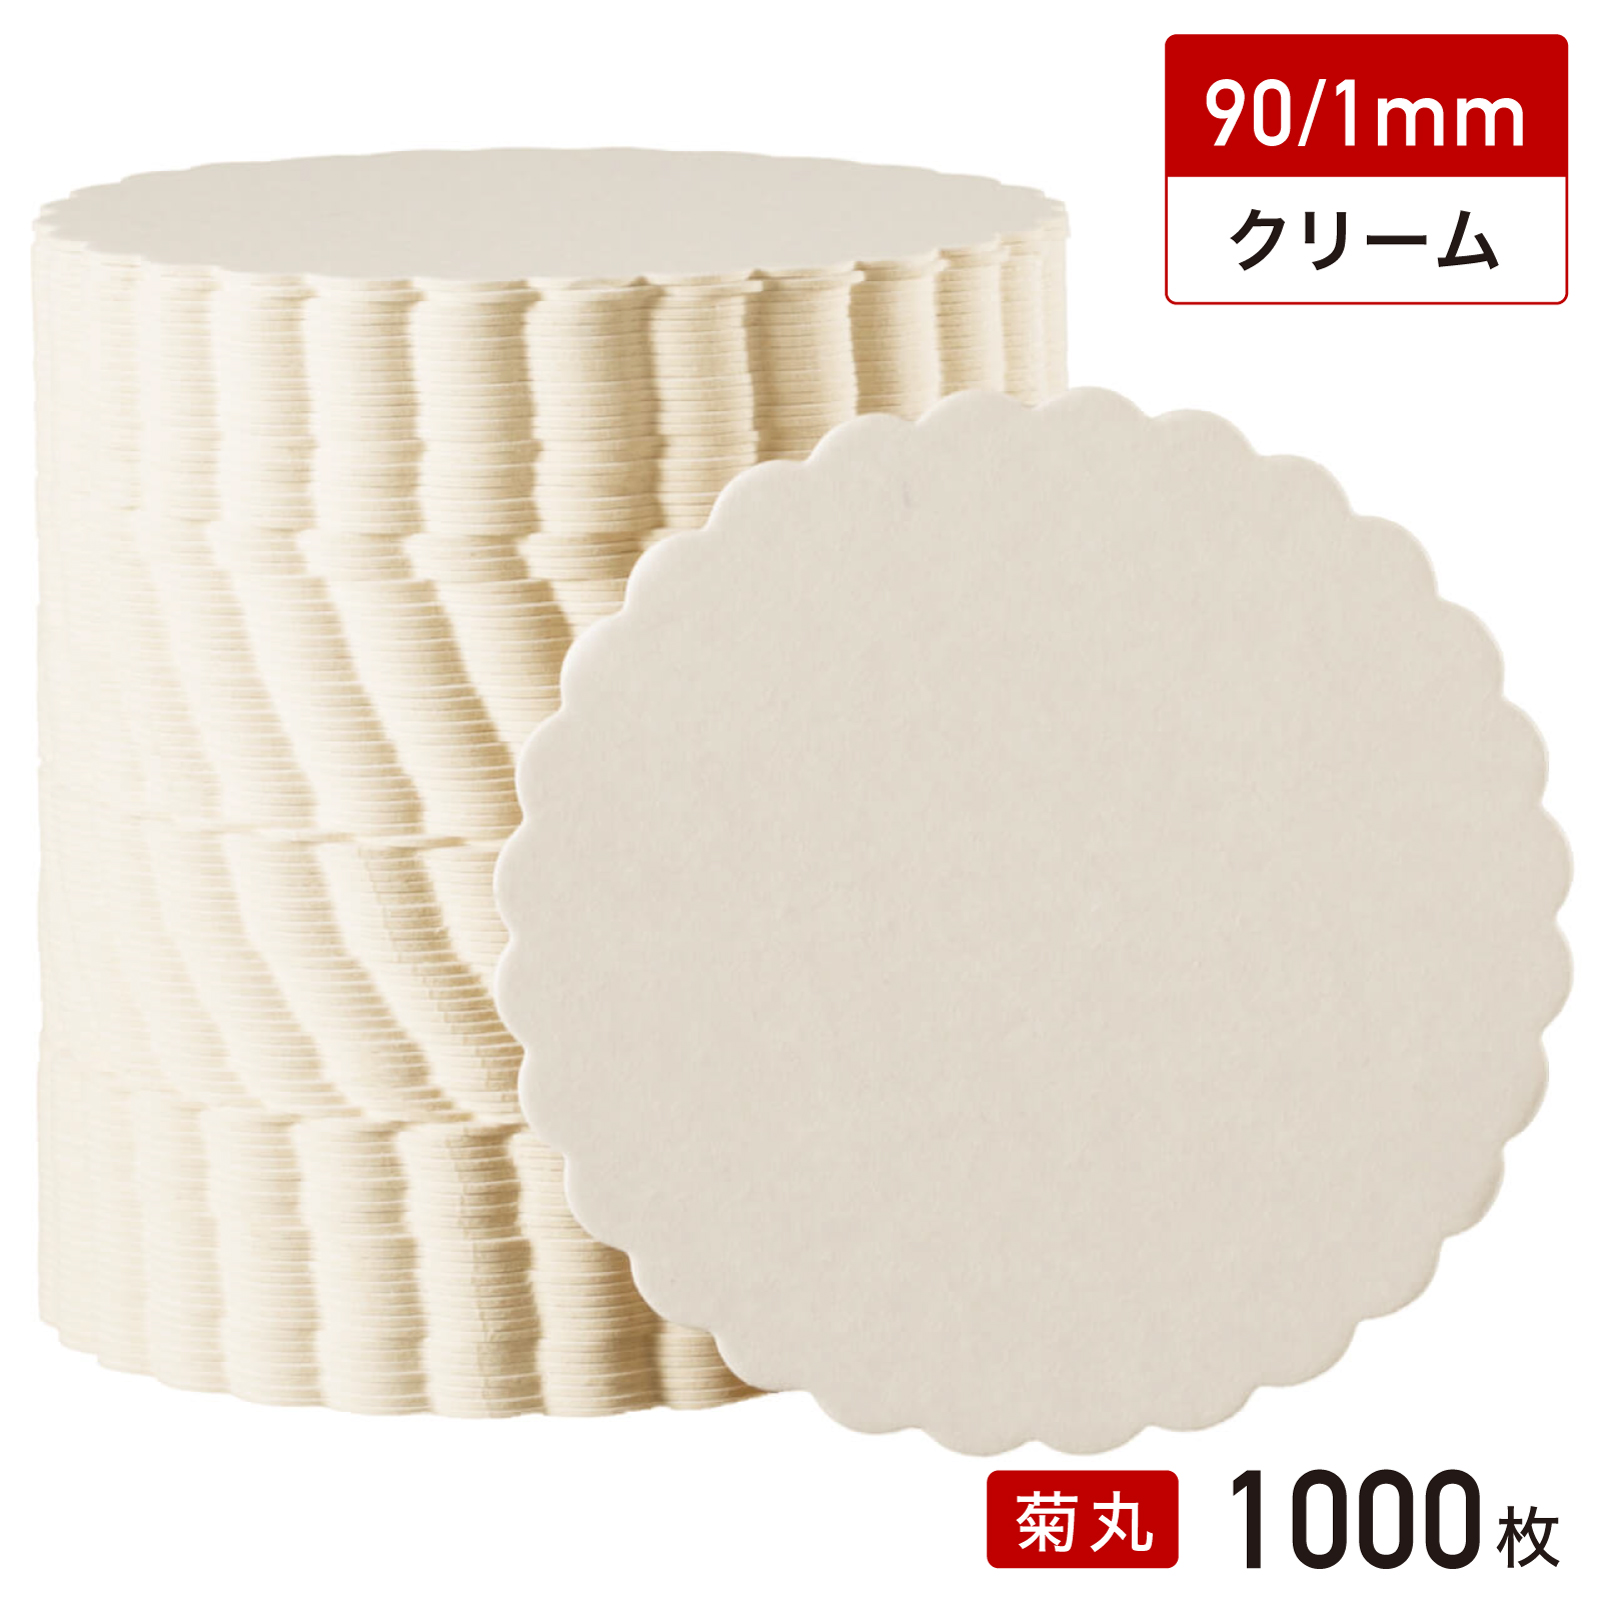 松山 紙 コースター 菊丸型 90/1mm（クリーム無地）1000枚の商品画像